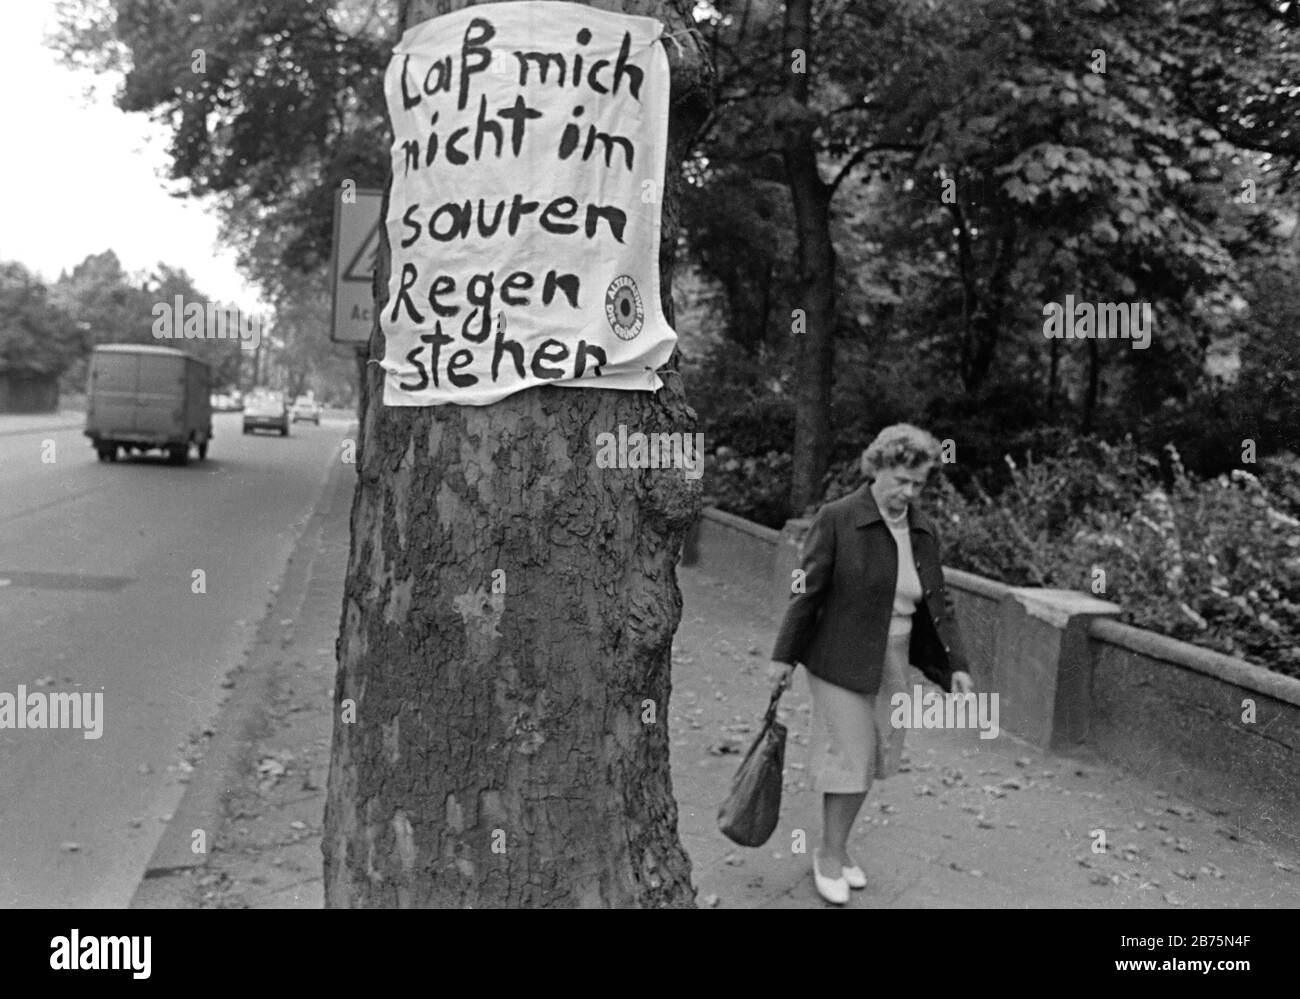 Eine Frau läuft an einem Baum auf einer Straße in Gelsenkirchen vorbei, wo ein Plakat der Partei "die Grünen" mit dem Text "Ich lasse mich nicht in saurem Regen stehen" angebracht ist, 19. Mai 1984. [Automatisierte Übersetzung] Stockfoto